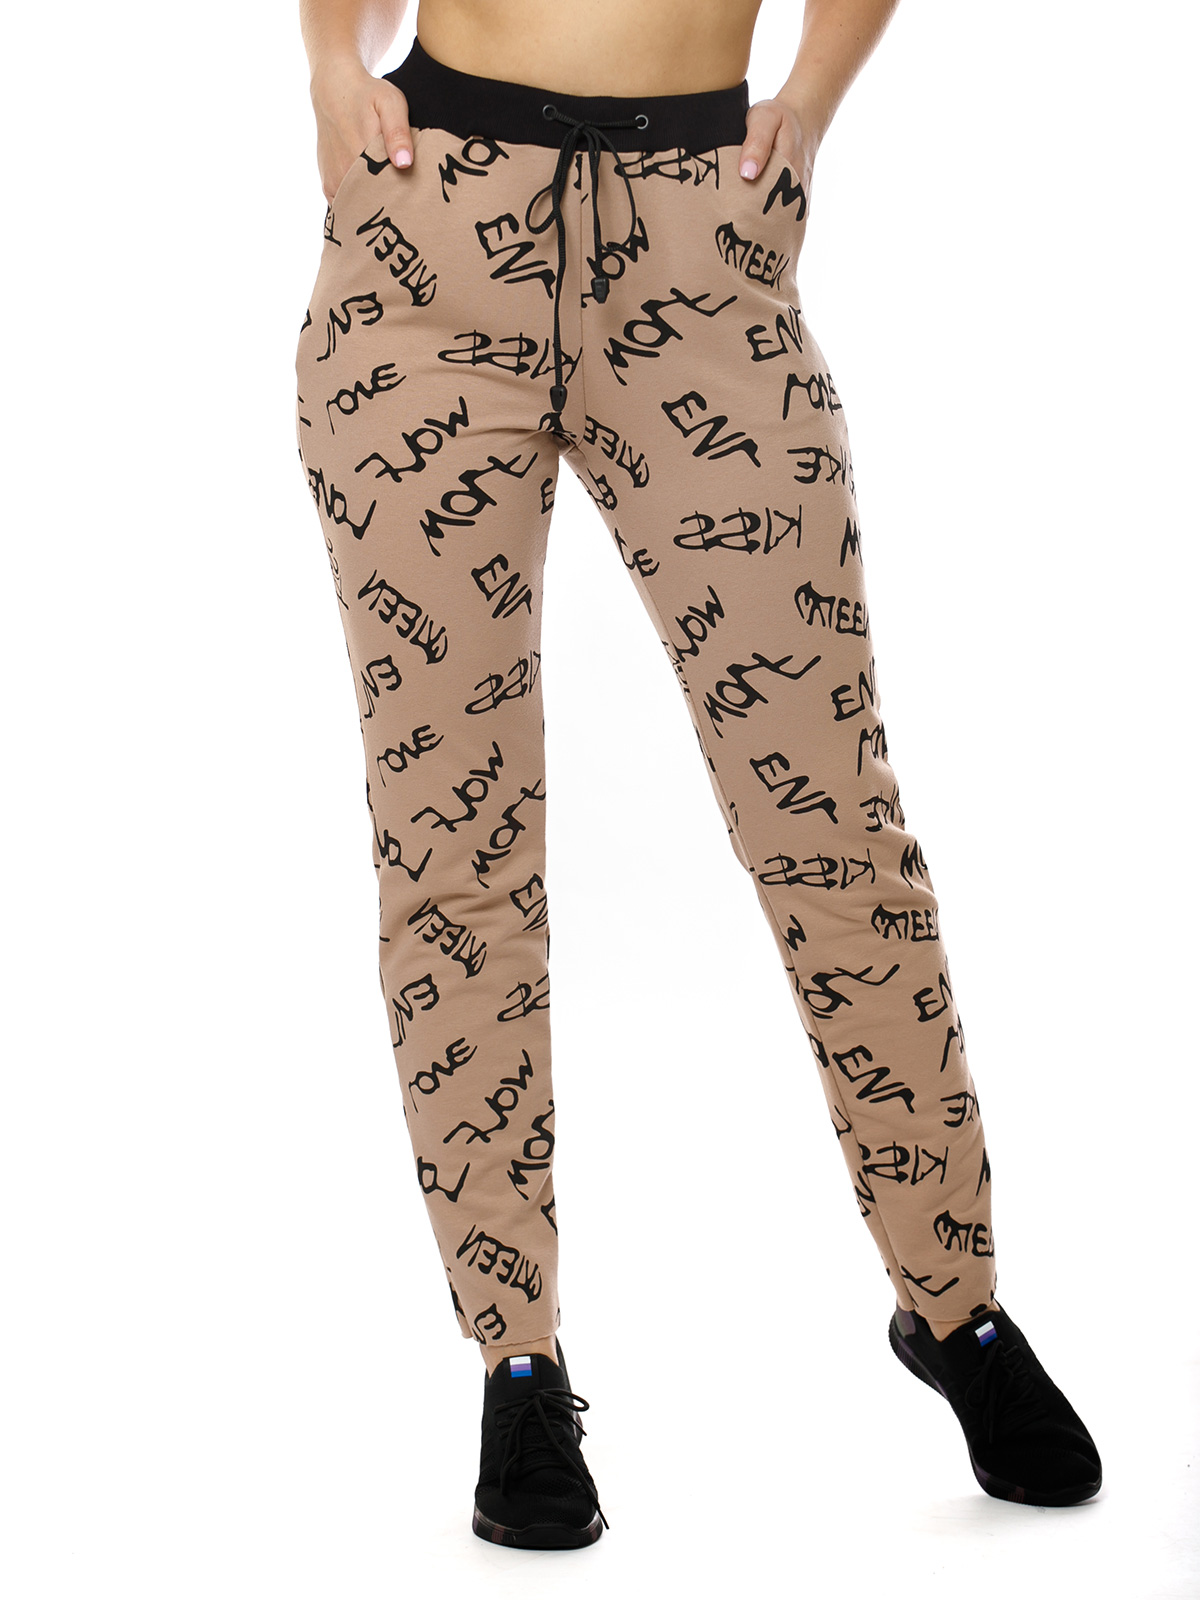 Спортивные брюки женские НСД Трикотаж 16-0775 коричневые 46 RU